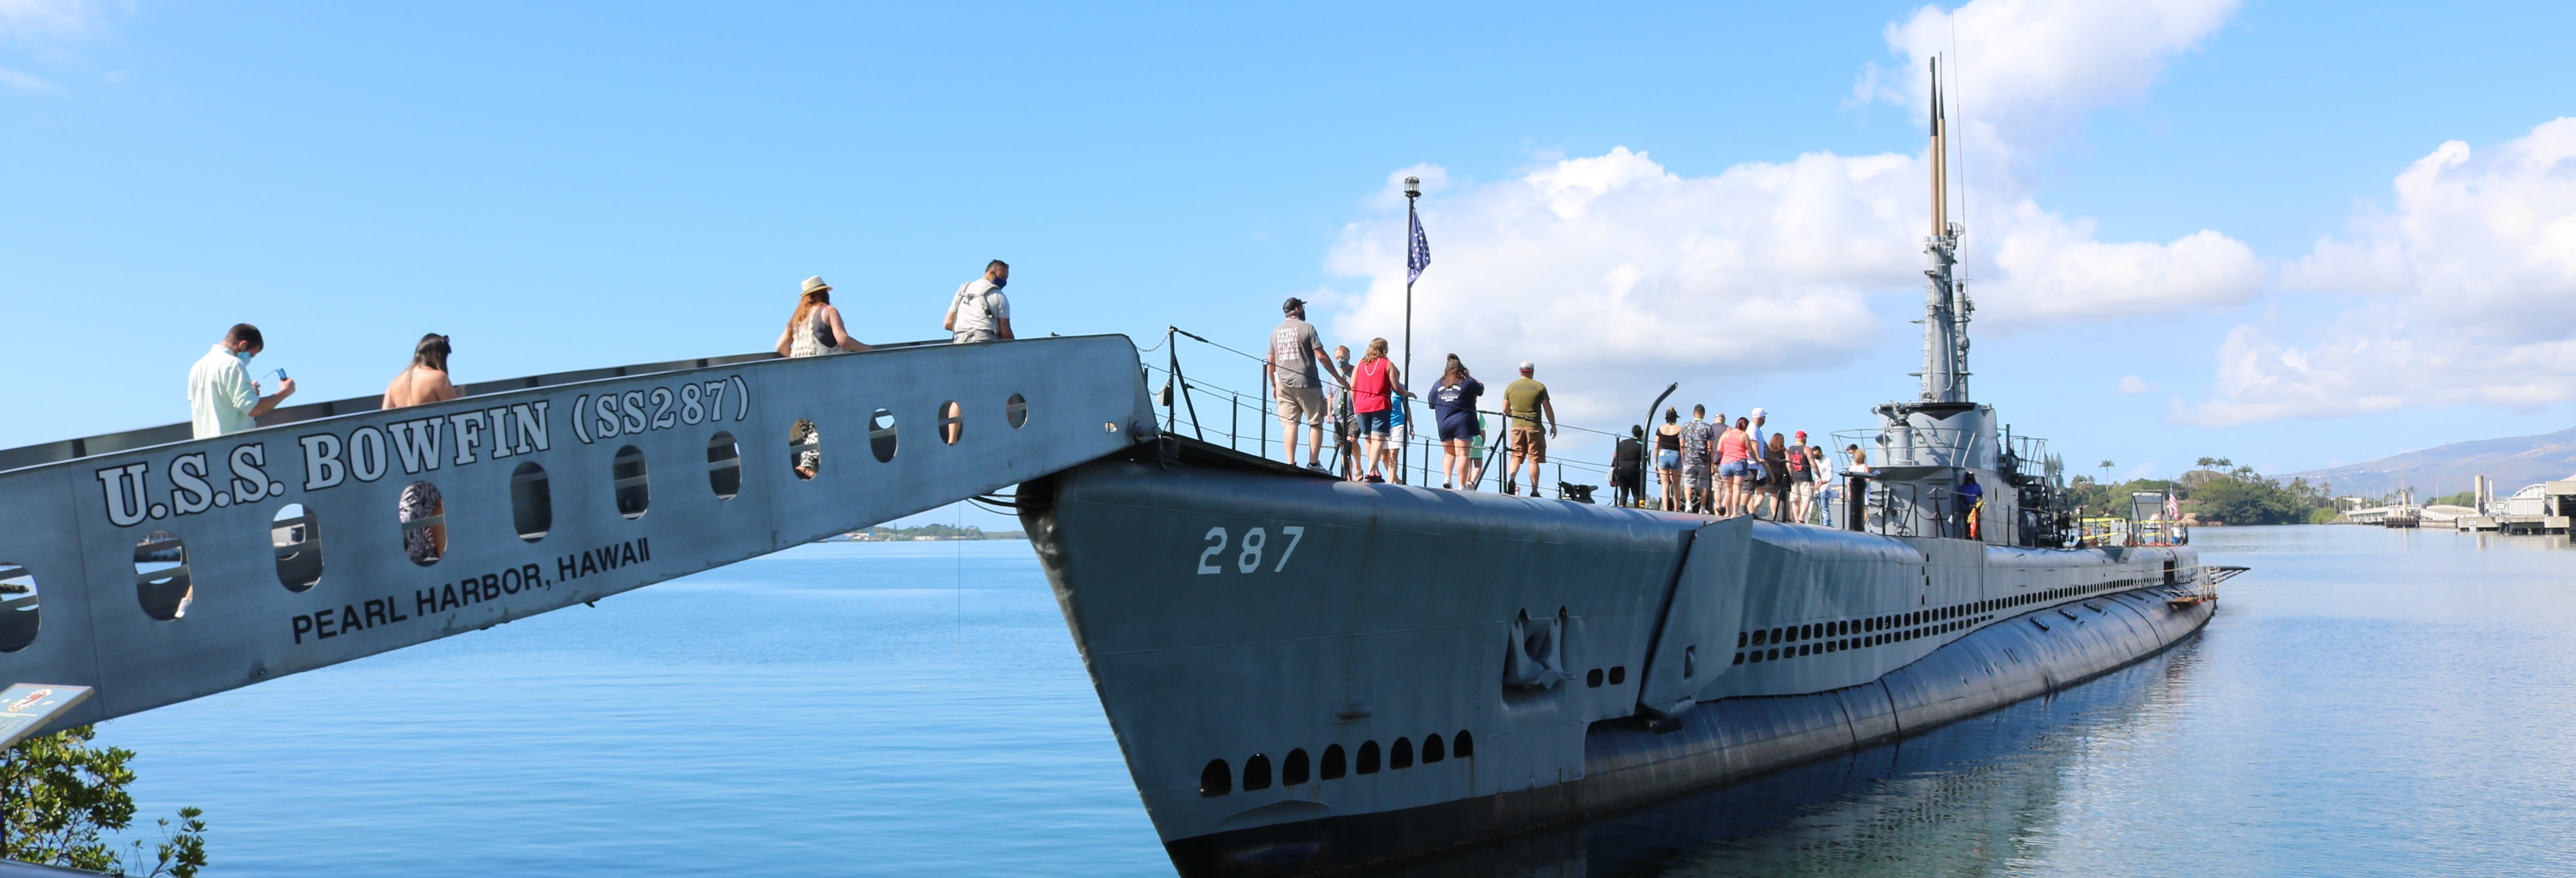 Ingresso do Museu e Parque Submarino USS Bowfin